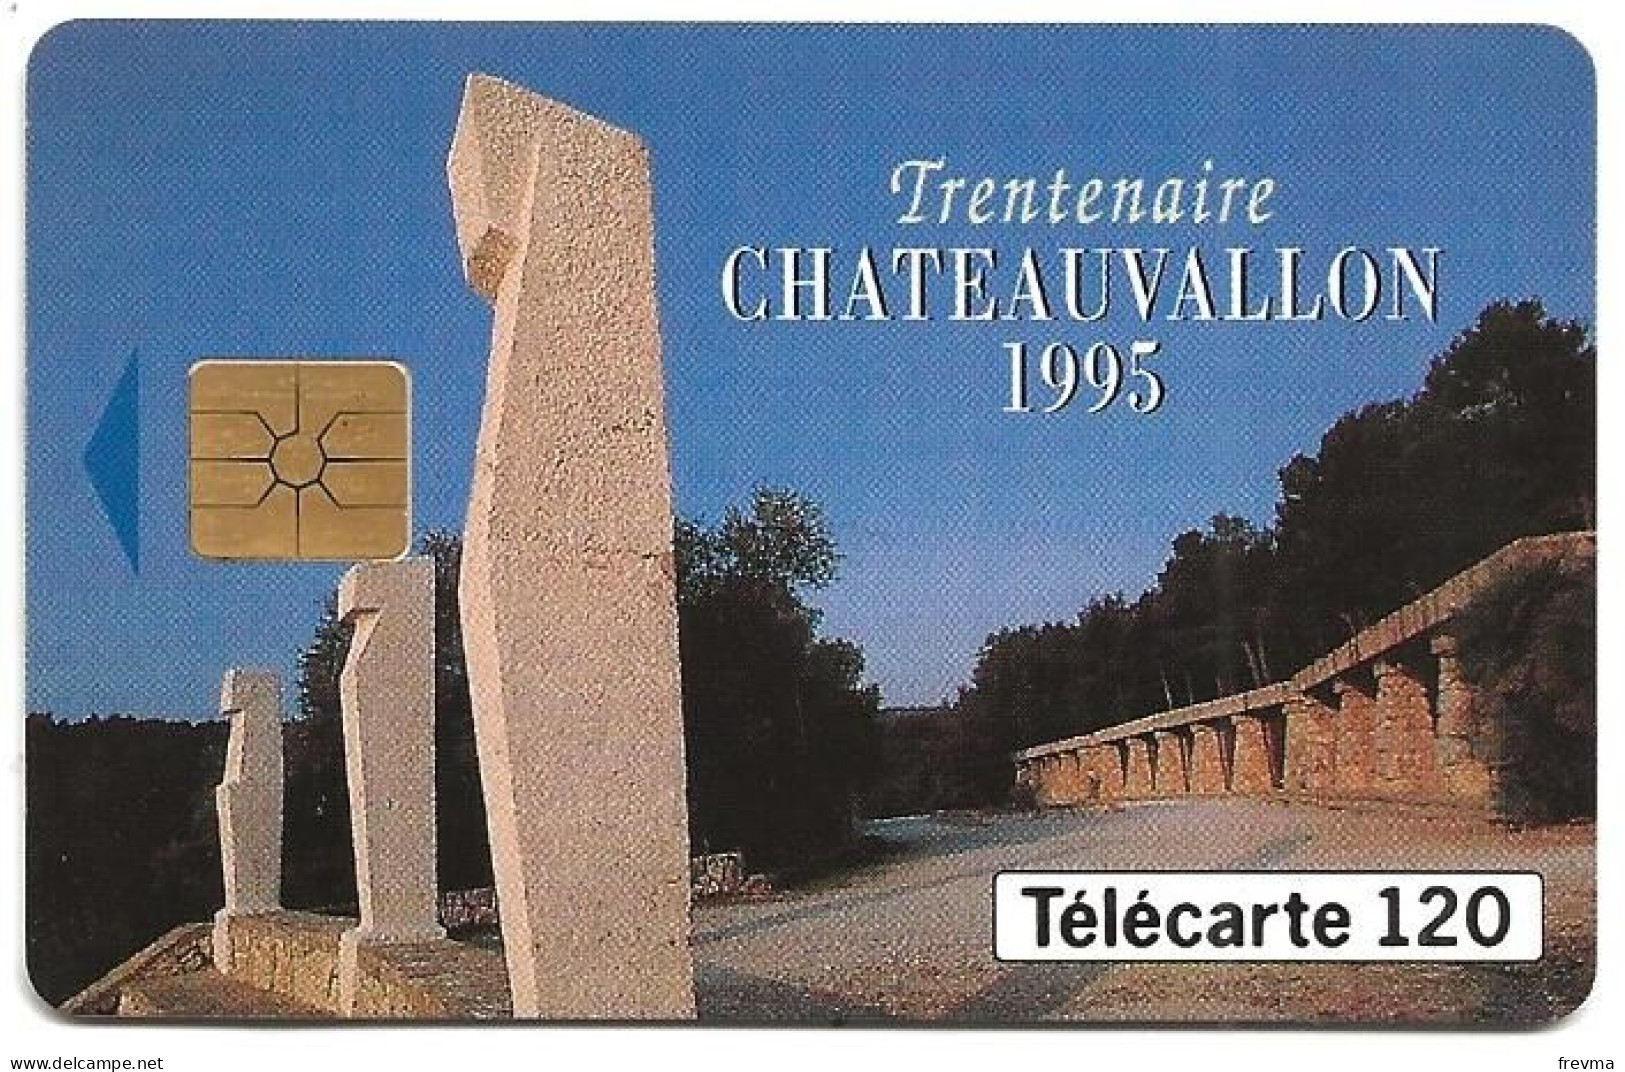 Telecarte F559 Chateauvallon 120 Unités - 1995